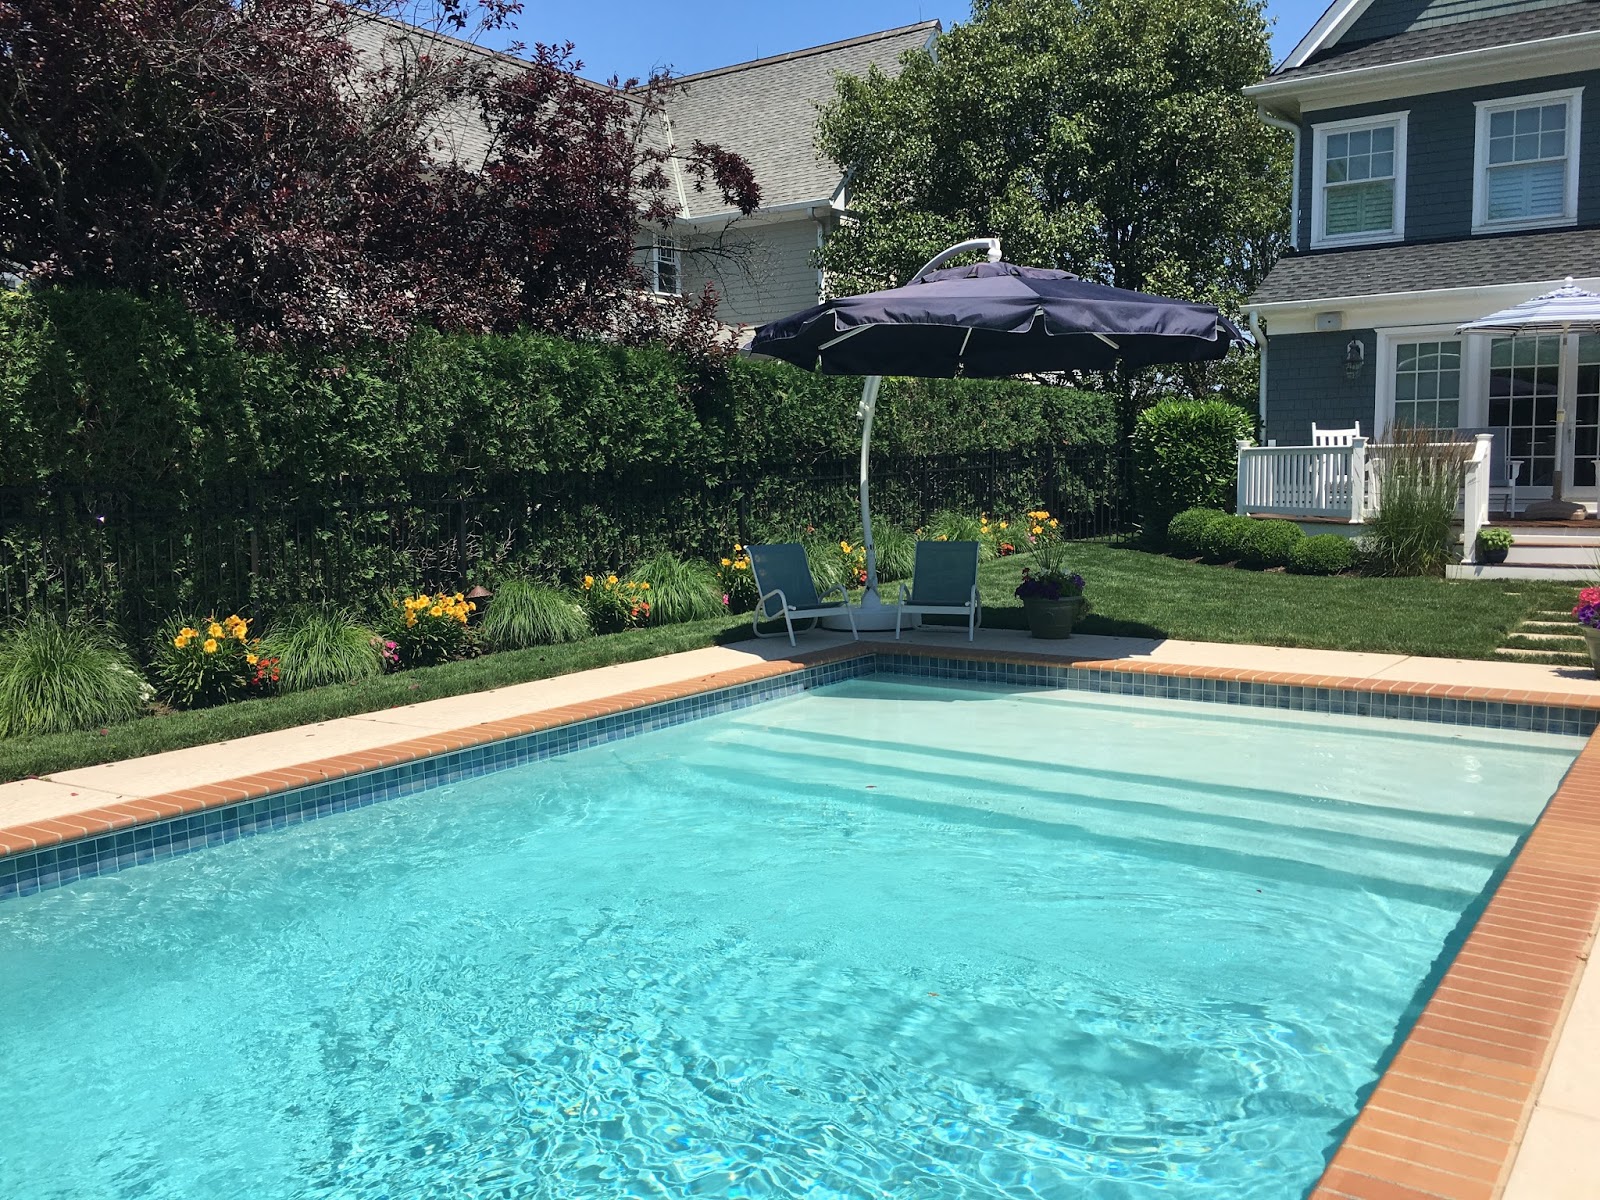 Classic rectangle swimming pool in backyard